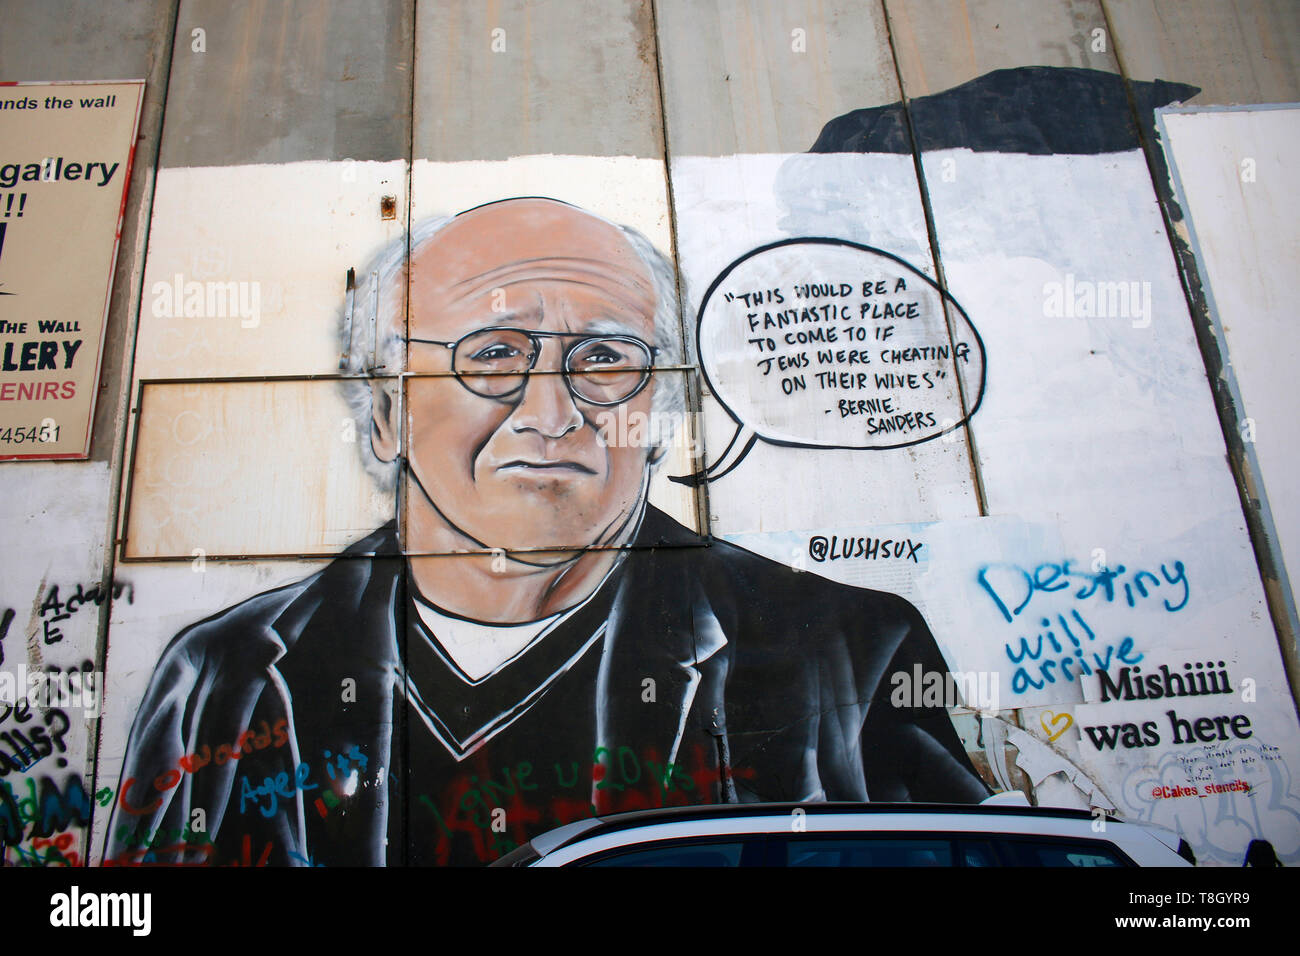 Graffity-Portrait von Bernie Sanders auf Mauer, Grenzanlage, Israelische Sperranlage, Bethlehem, Westjordanland/ Westbank, Palaestinensische Autonomie Stock Photo